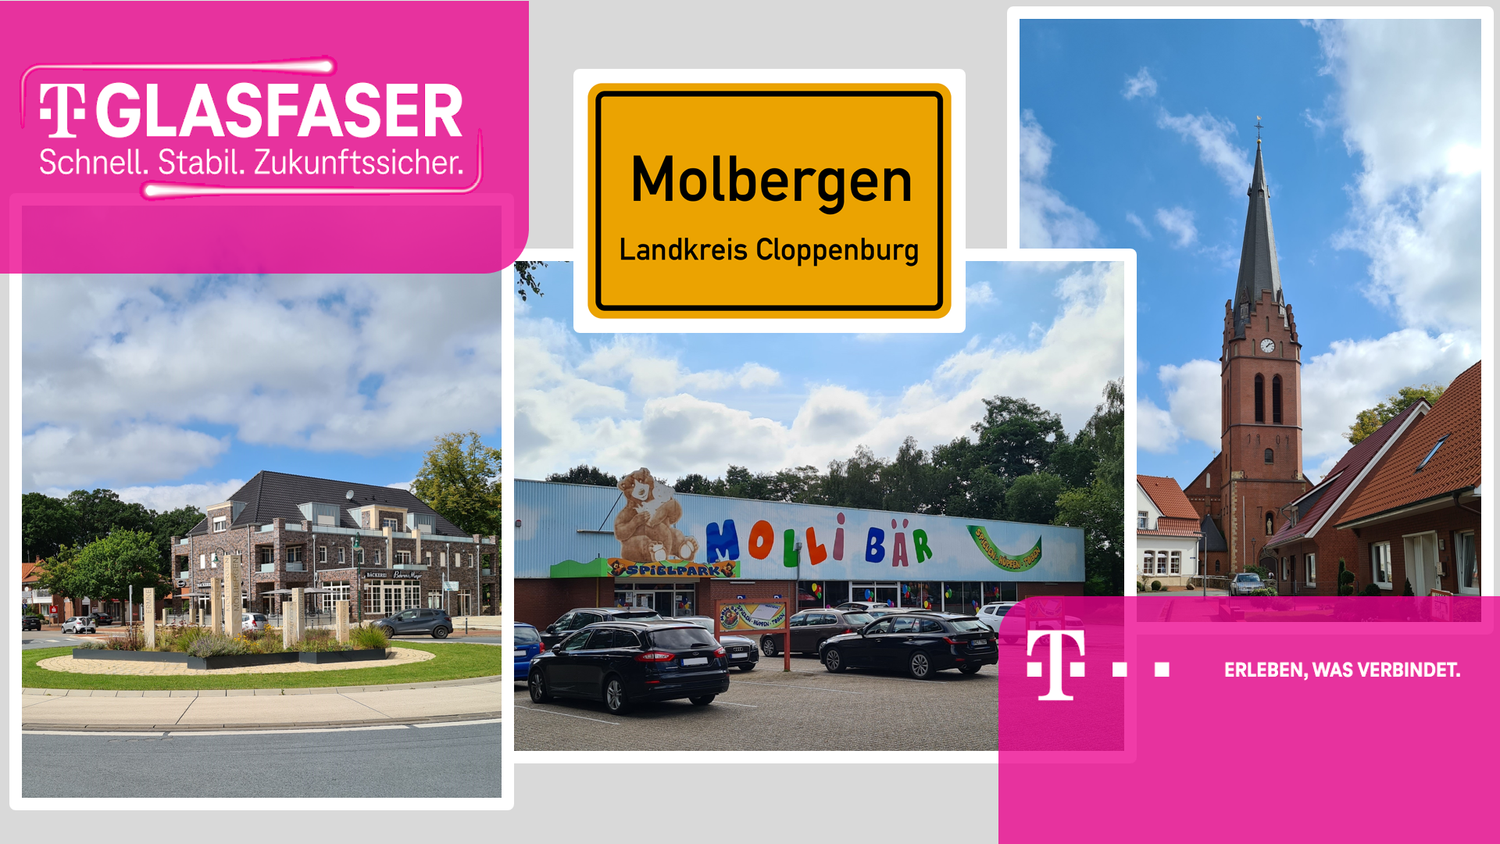 Start in die digitale Zukunft: Glasfasertechnik macht Molbergen noch moderner. Collage: Deutsche Telekom